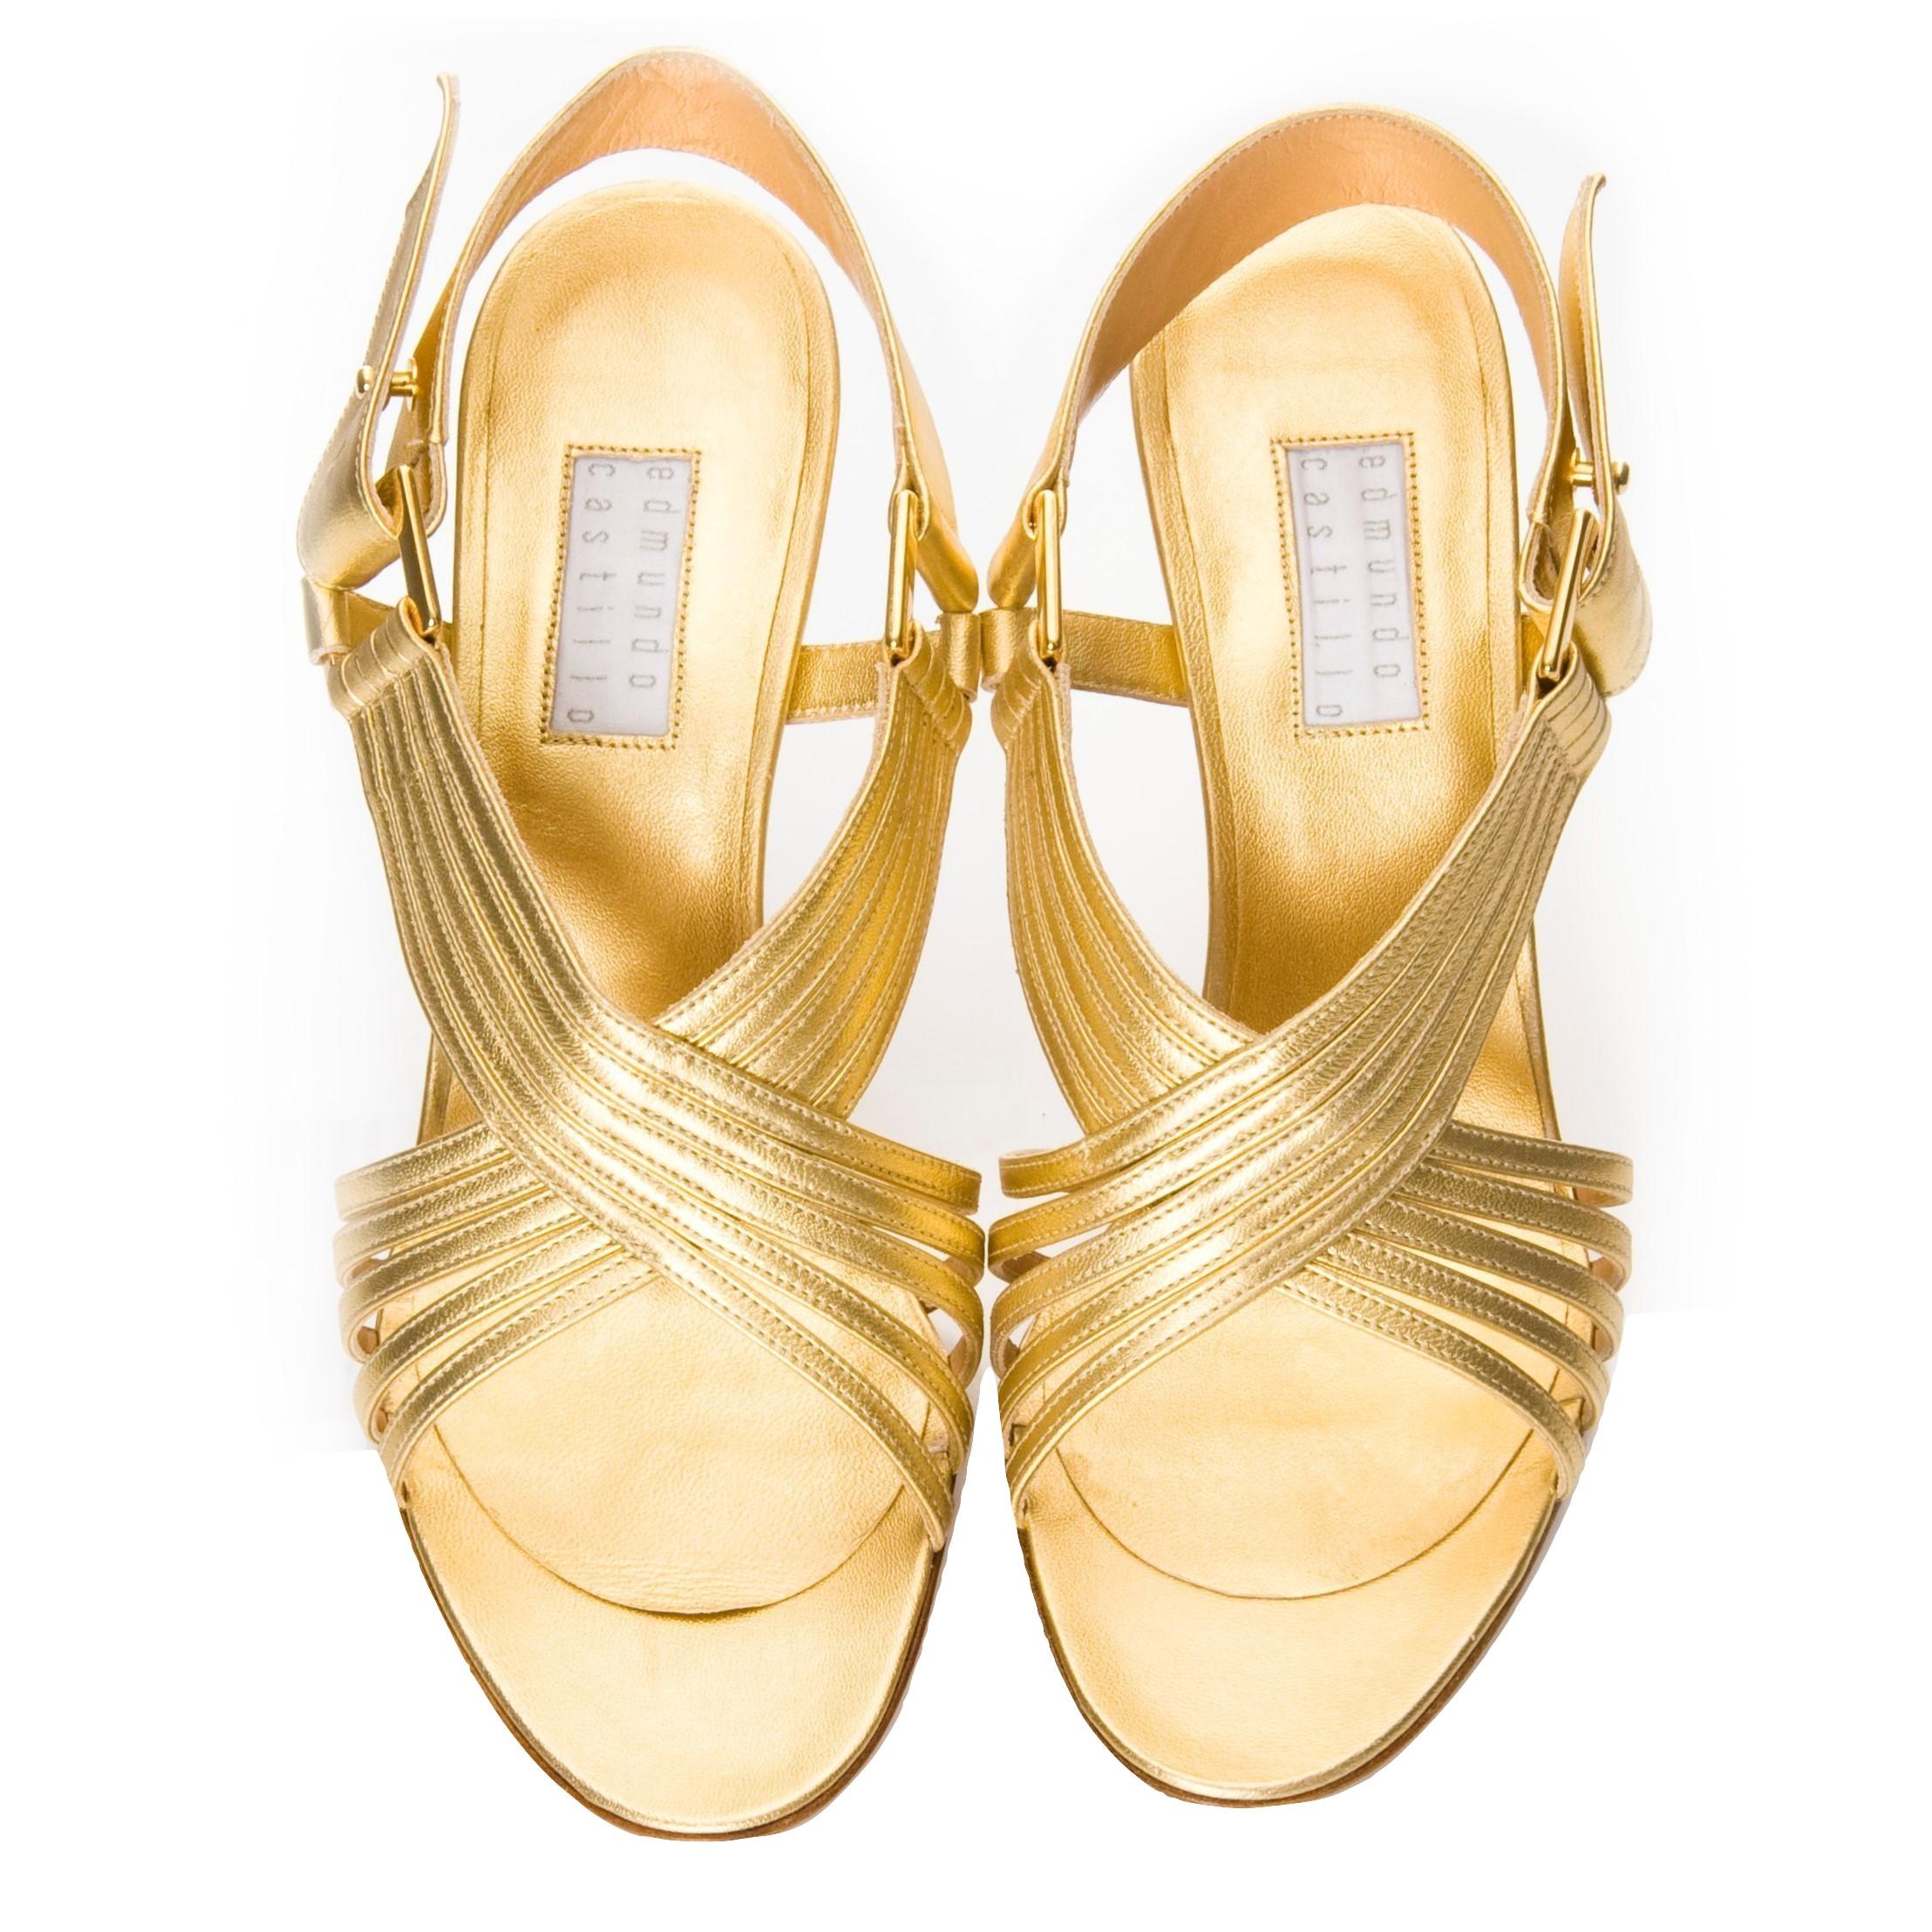 metallic gold heels